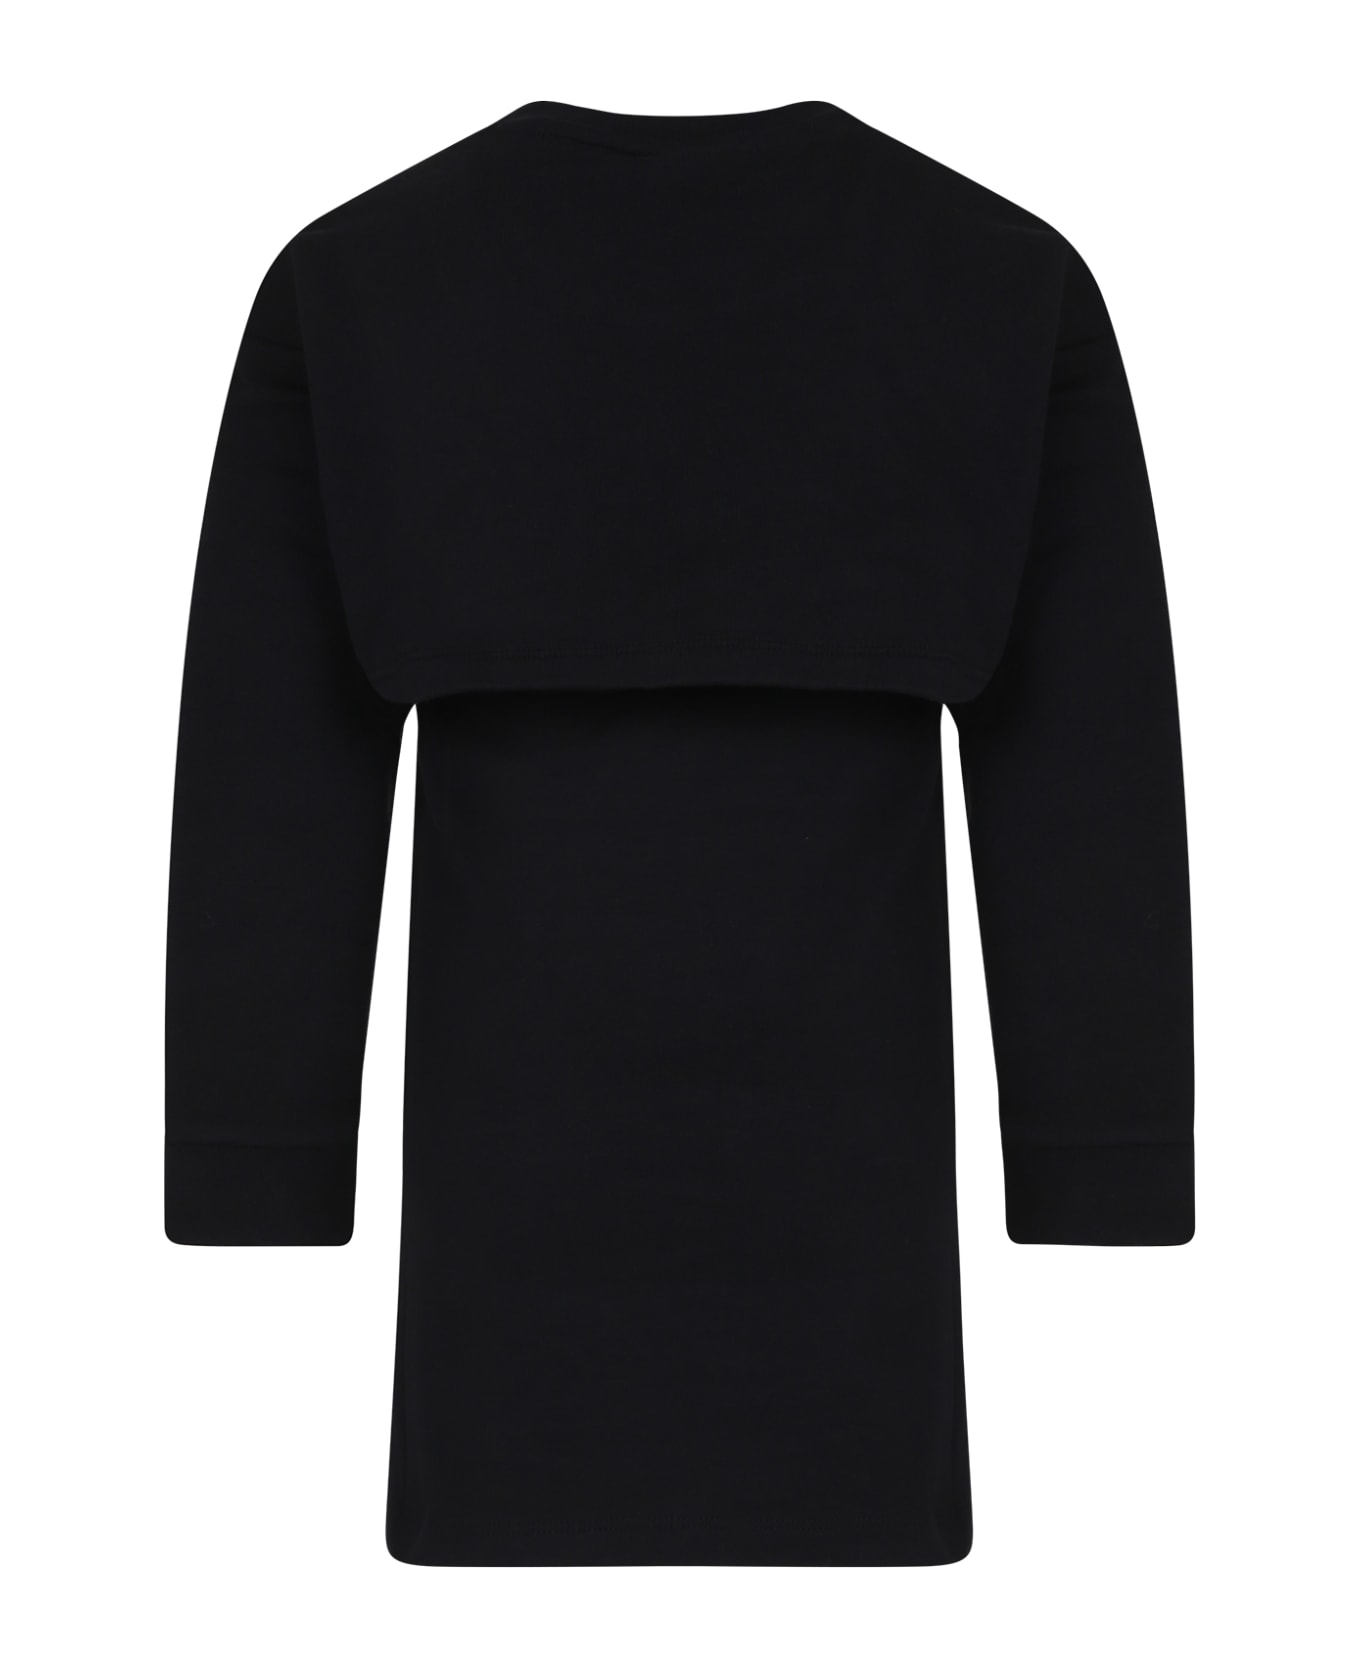 Fendi Black Dress For Girl With Fendi Logo - Black